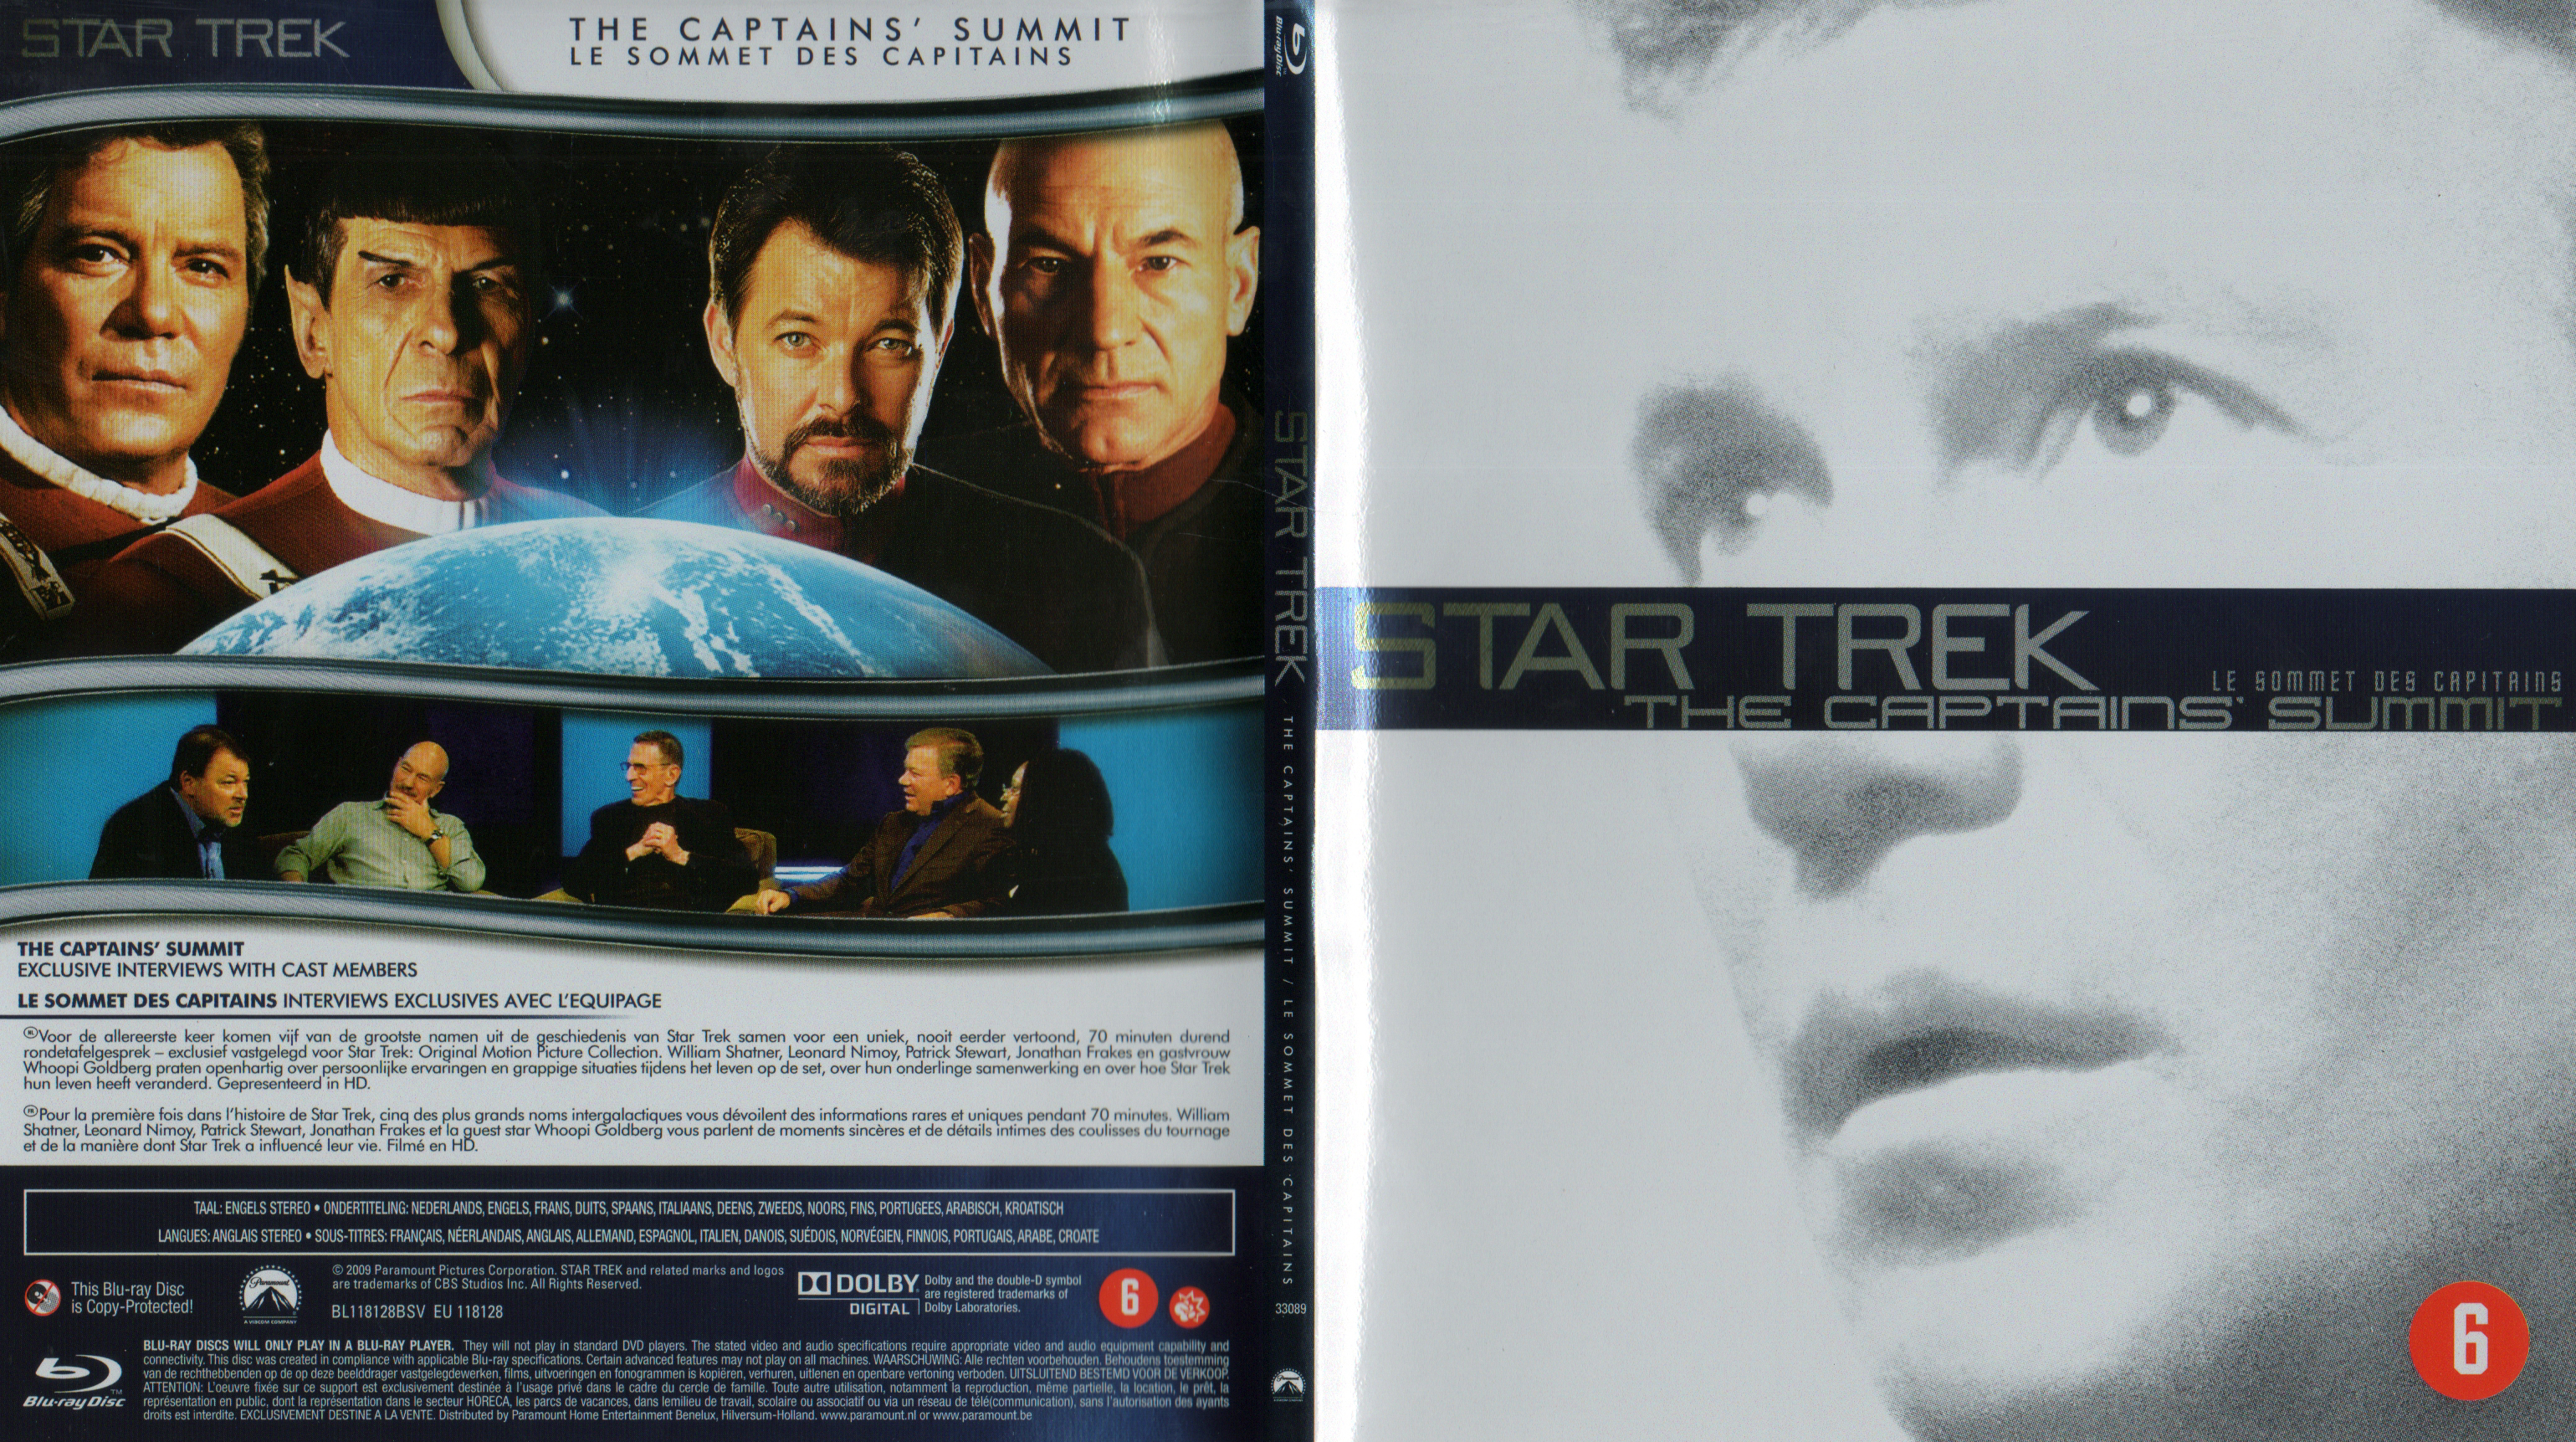 Jaquette DVD Star Trek le sommet des capitains (BLU-RAY)